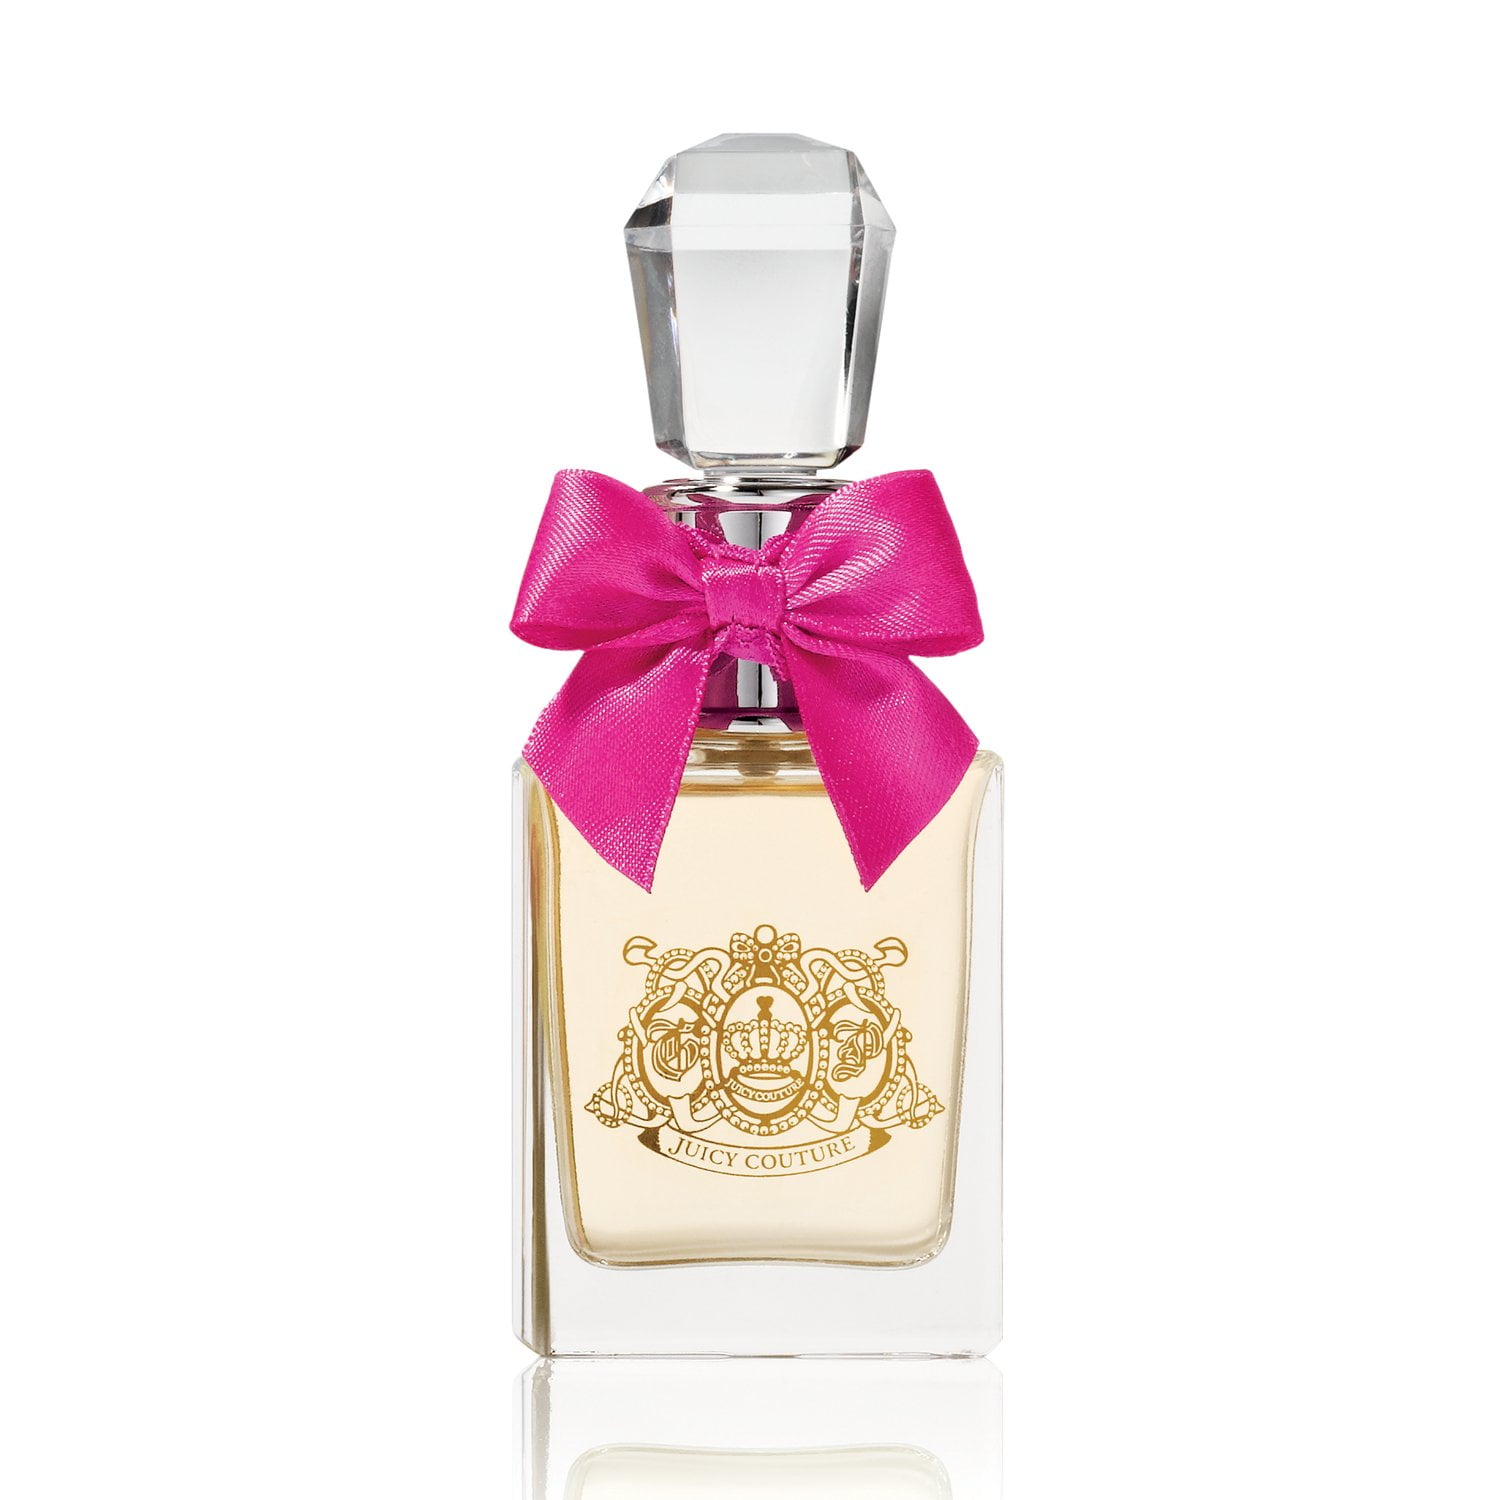 Juicy Couture Viva La Juicy Eau de Parfum Perfume for Women, 3.4 Oz 